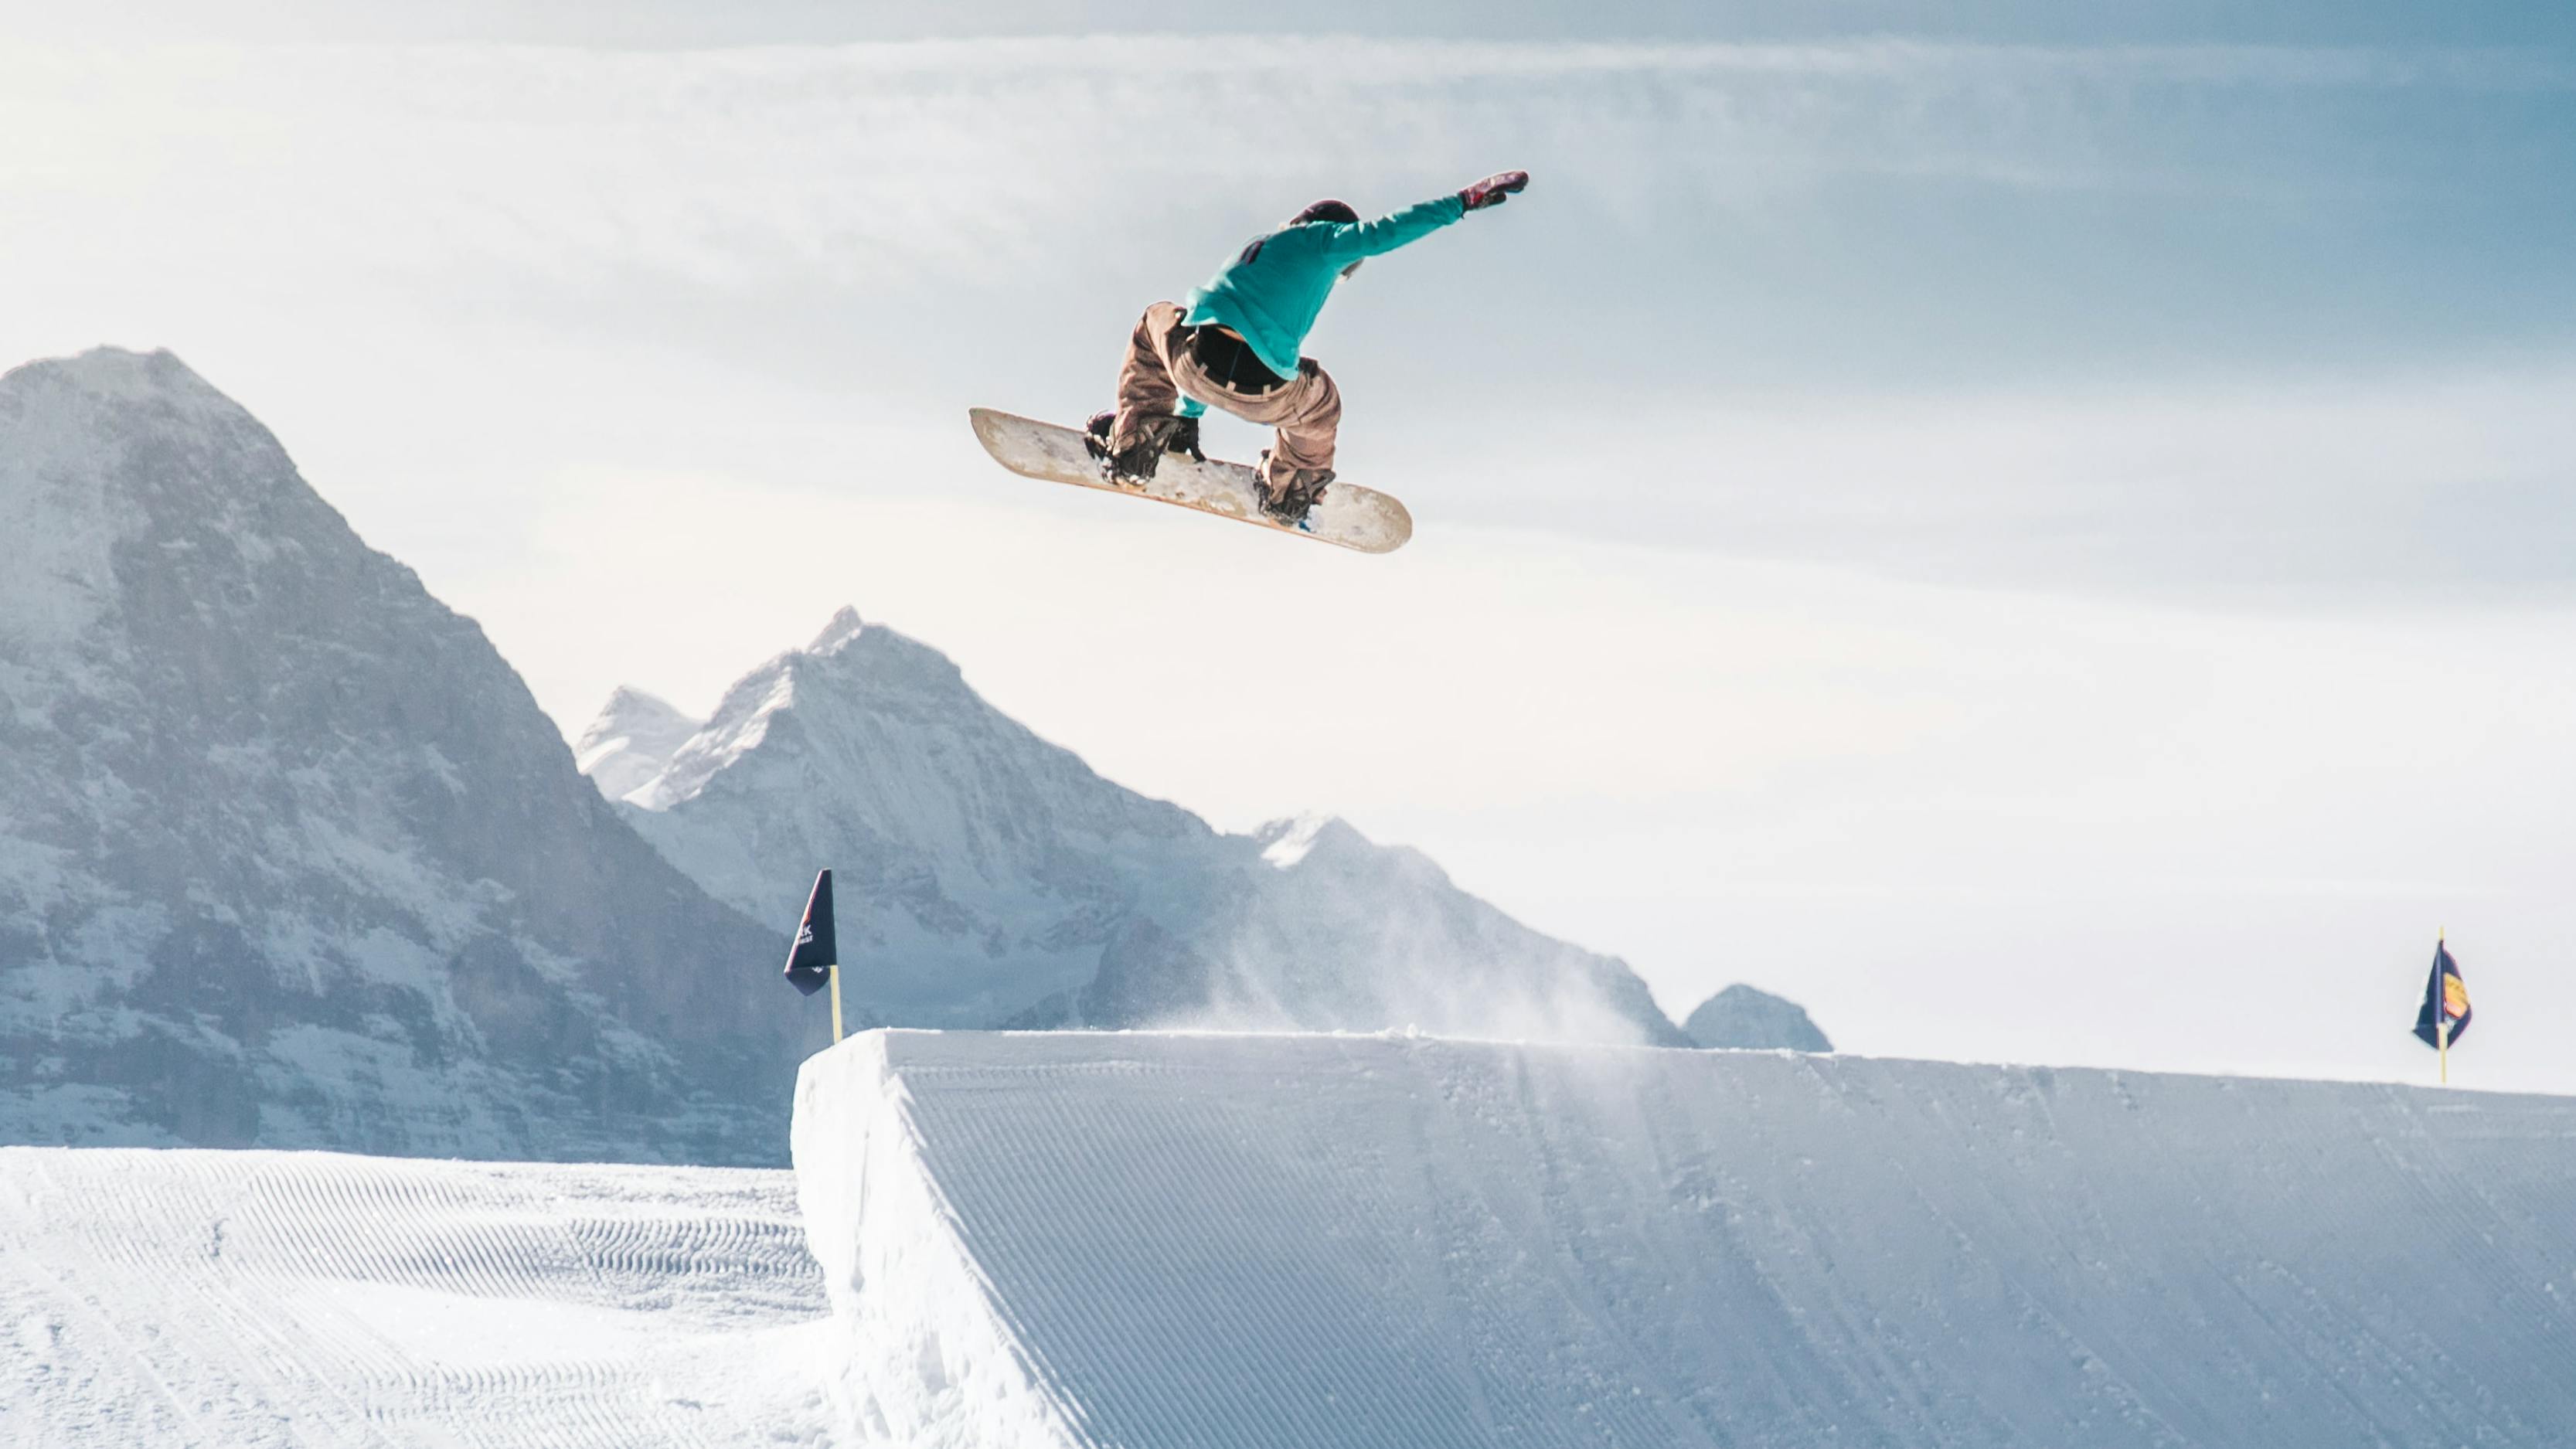 A man jumps off a jump at a ski resort on a snowboard. 